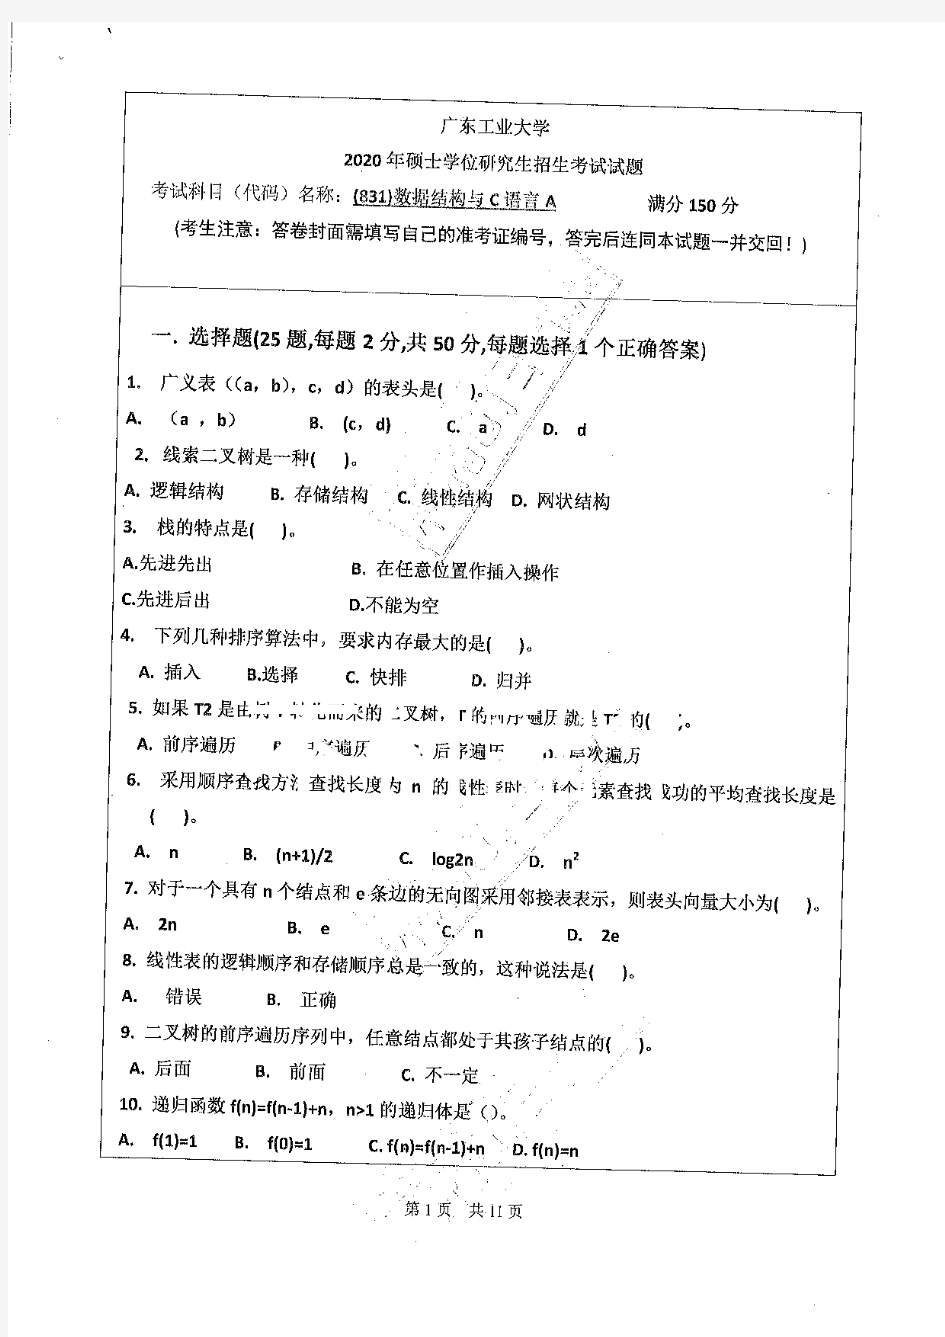 广东工业大学831数据结构与C语言专业课考研真题(2020年)